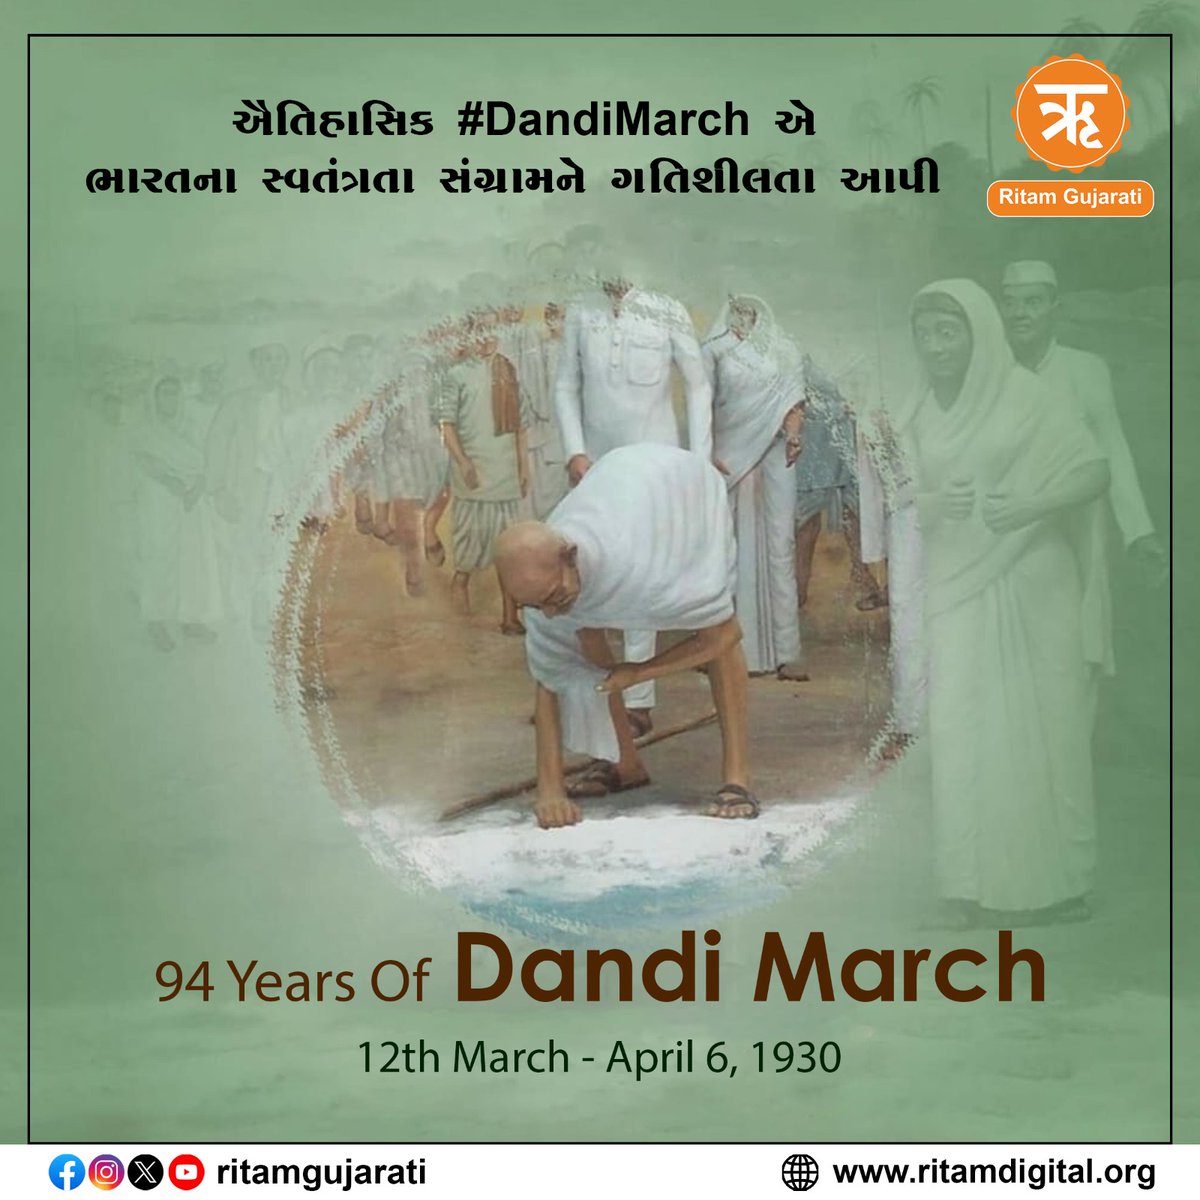 વર્ષ 1930માં આજના દિવસે ગાંધીજીએ અંગ્રેજોના મીઠાના ક્રૂર કાયદાના વિરોધમાં સાબરમતી આશ્રમથી દાંડી સત્યાગ્રહની શરૂઆત કરી હતી. 
દાંડીકૂચના દરેક સત્યાગ્રહીઓને સાદર નમન 
#DandiMarch #Satyagrah #MahatmaGandhi #Dandi_March_Yatra #DandiMarchYatra #DandiSatyagraha  #दांडी_नमक_सत्याग्रह